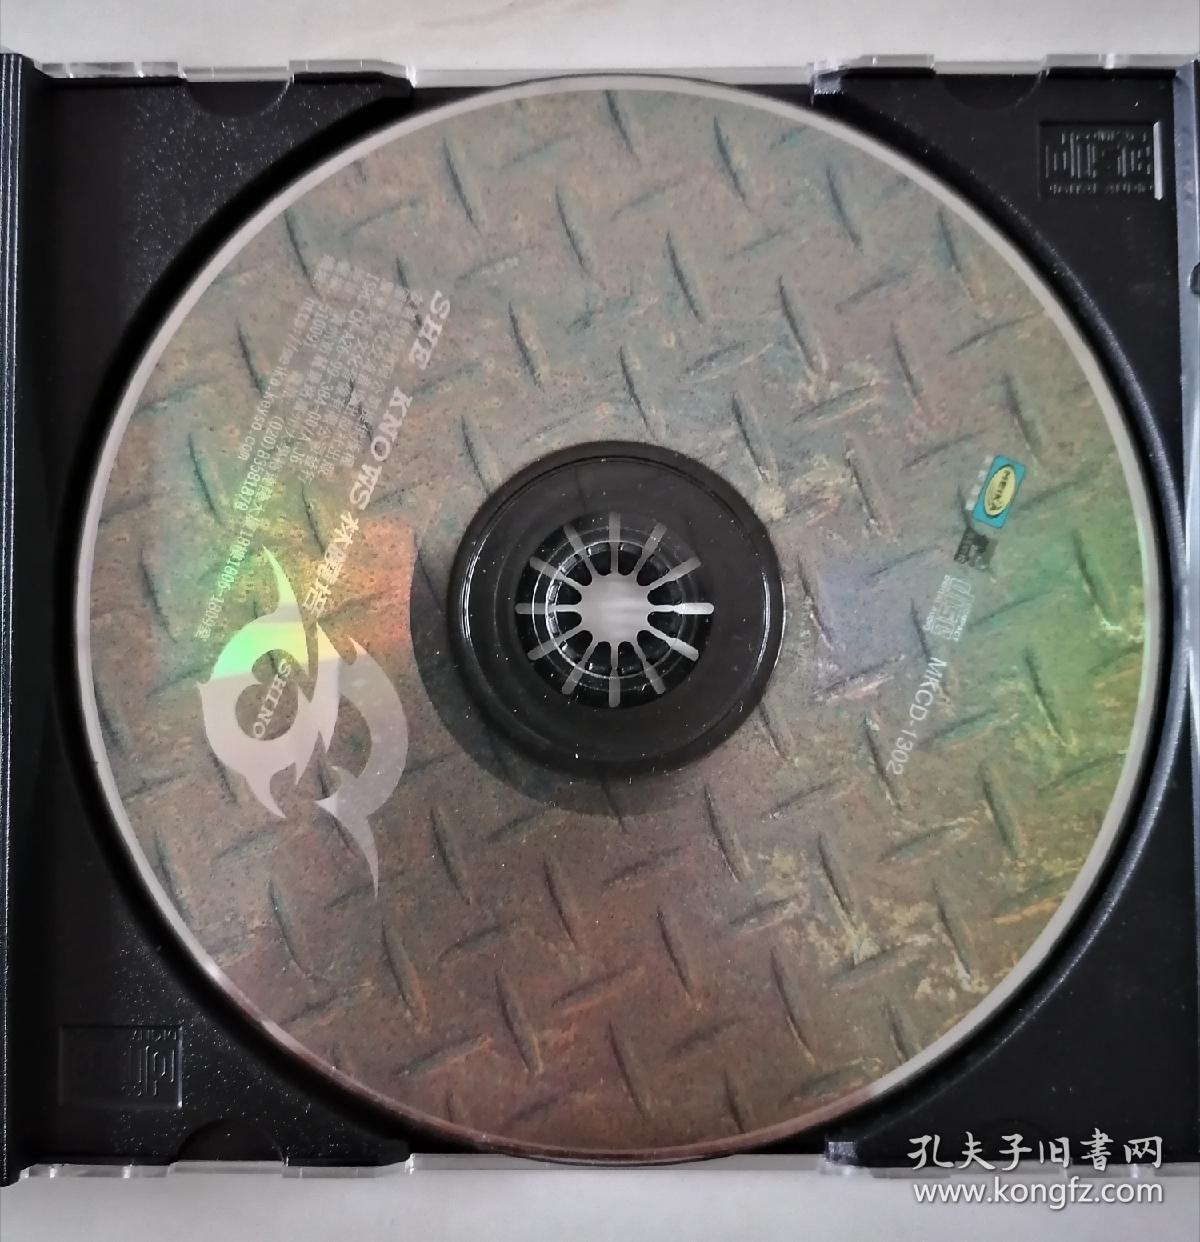 林晓培-SHE KNO WS全新国语专辑（CD+VCD）